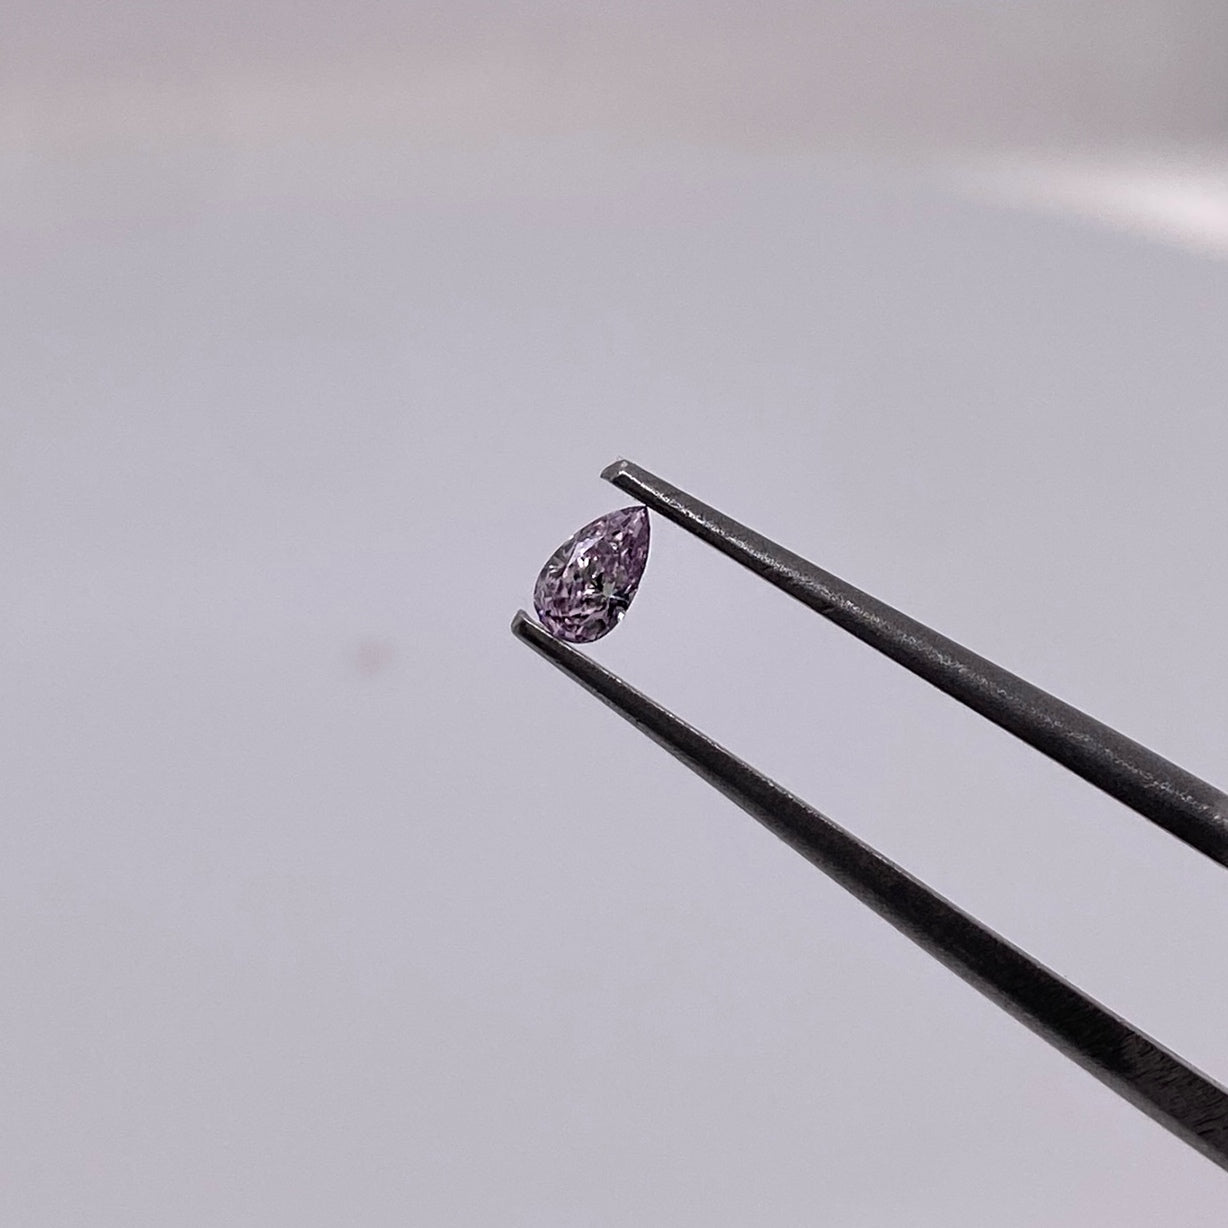 ADVANCE / SECTION Purple Pink Diamond “C” / Drop Cut / Measurements: 2.45 x 4.05mm, total value 19,800 pesos